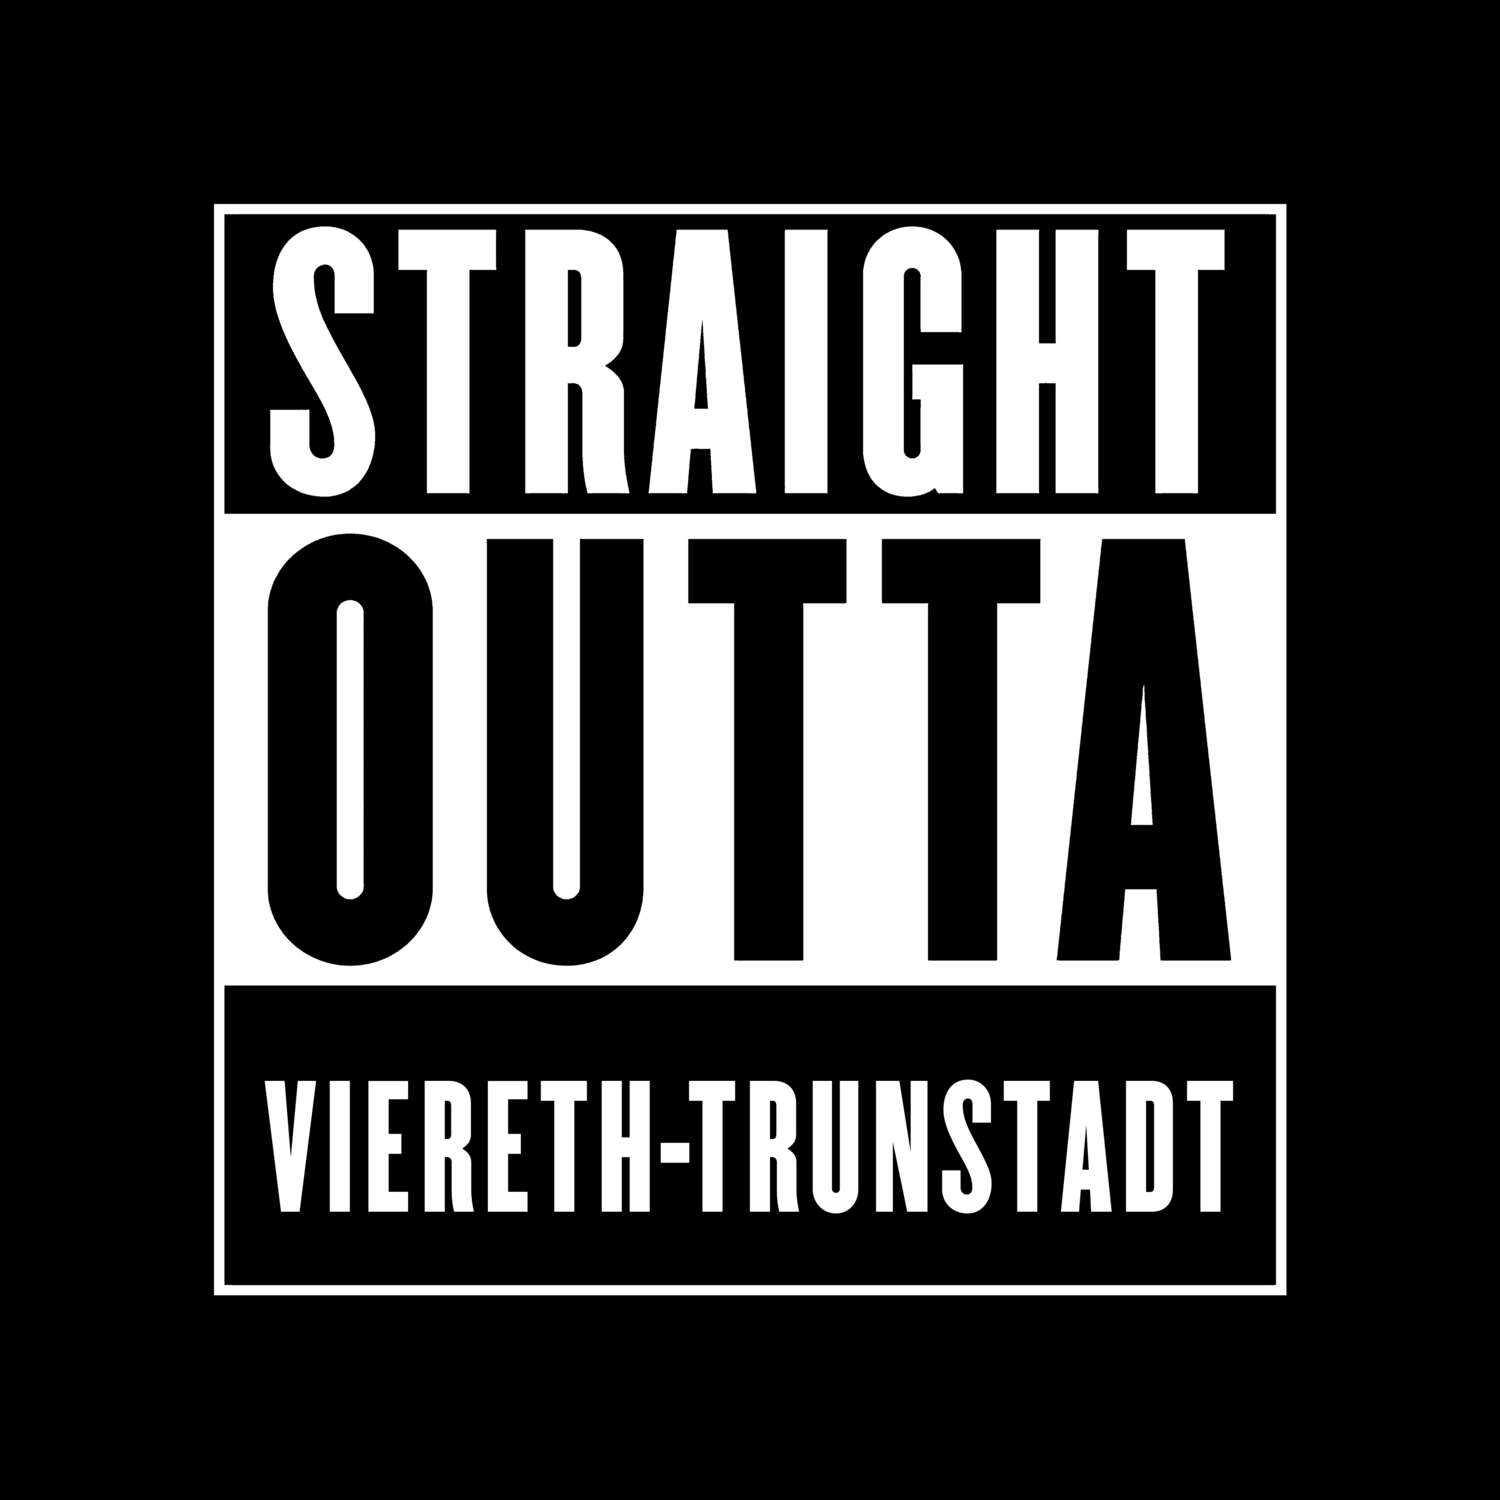 Viereth-Trunstadt T-Shirt »Straight Outta«